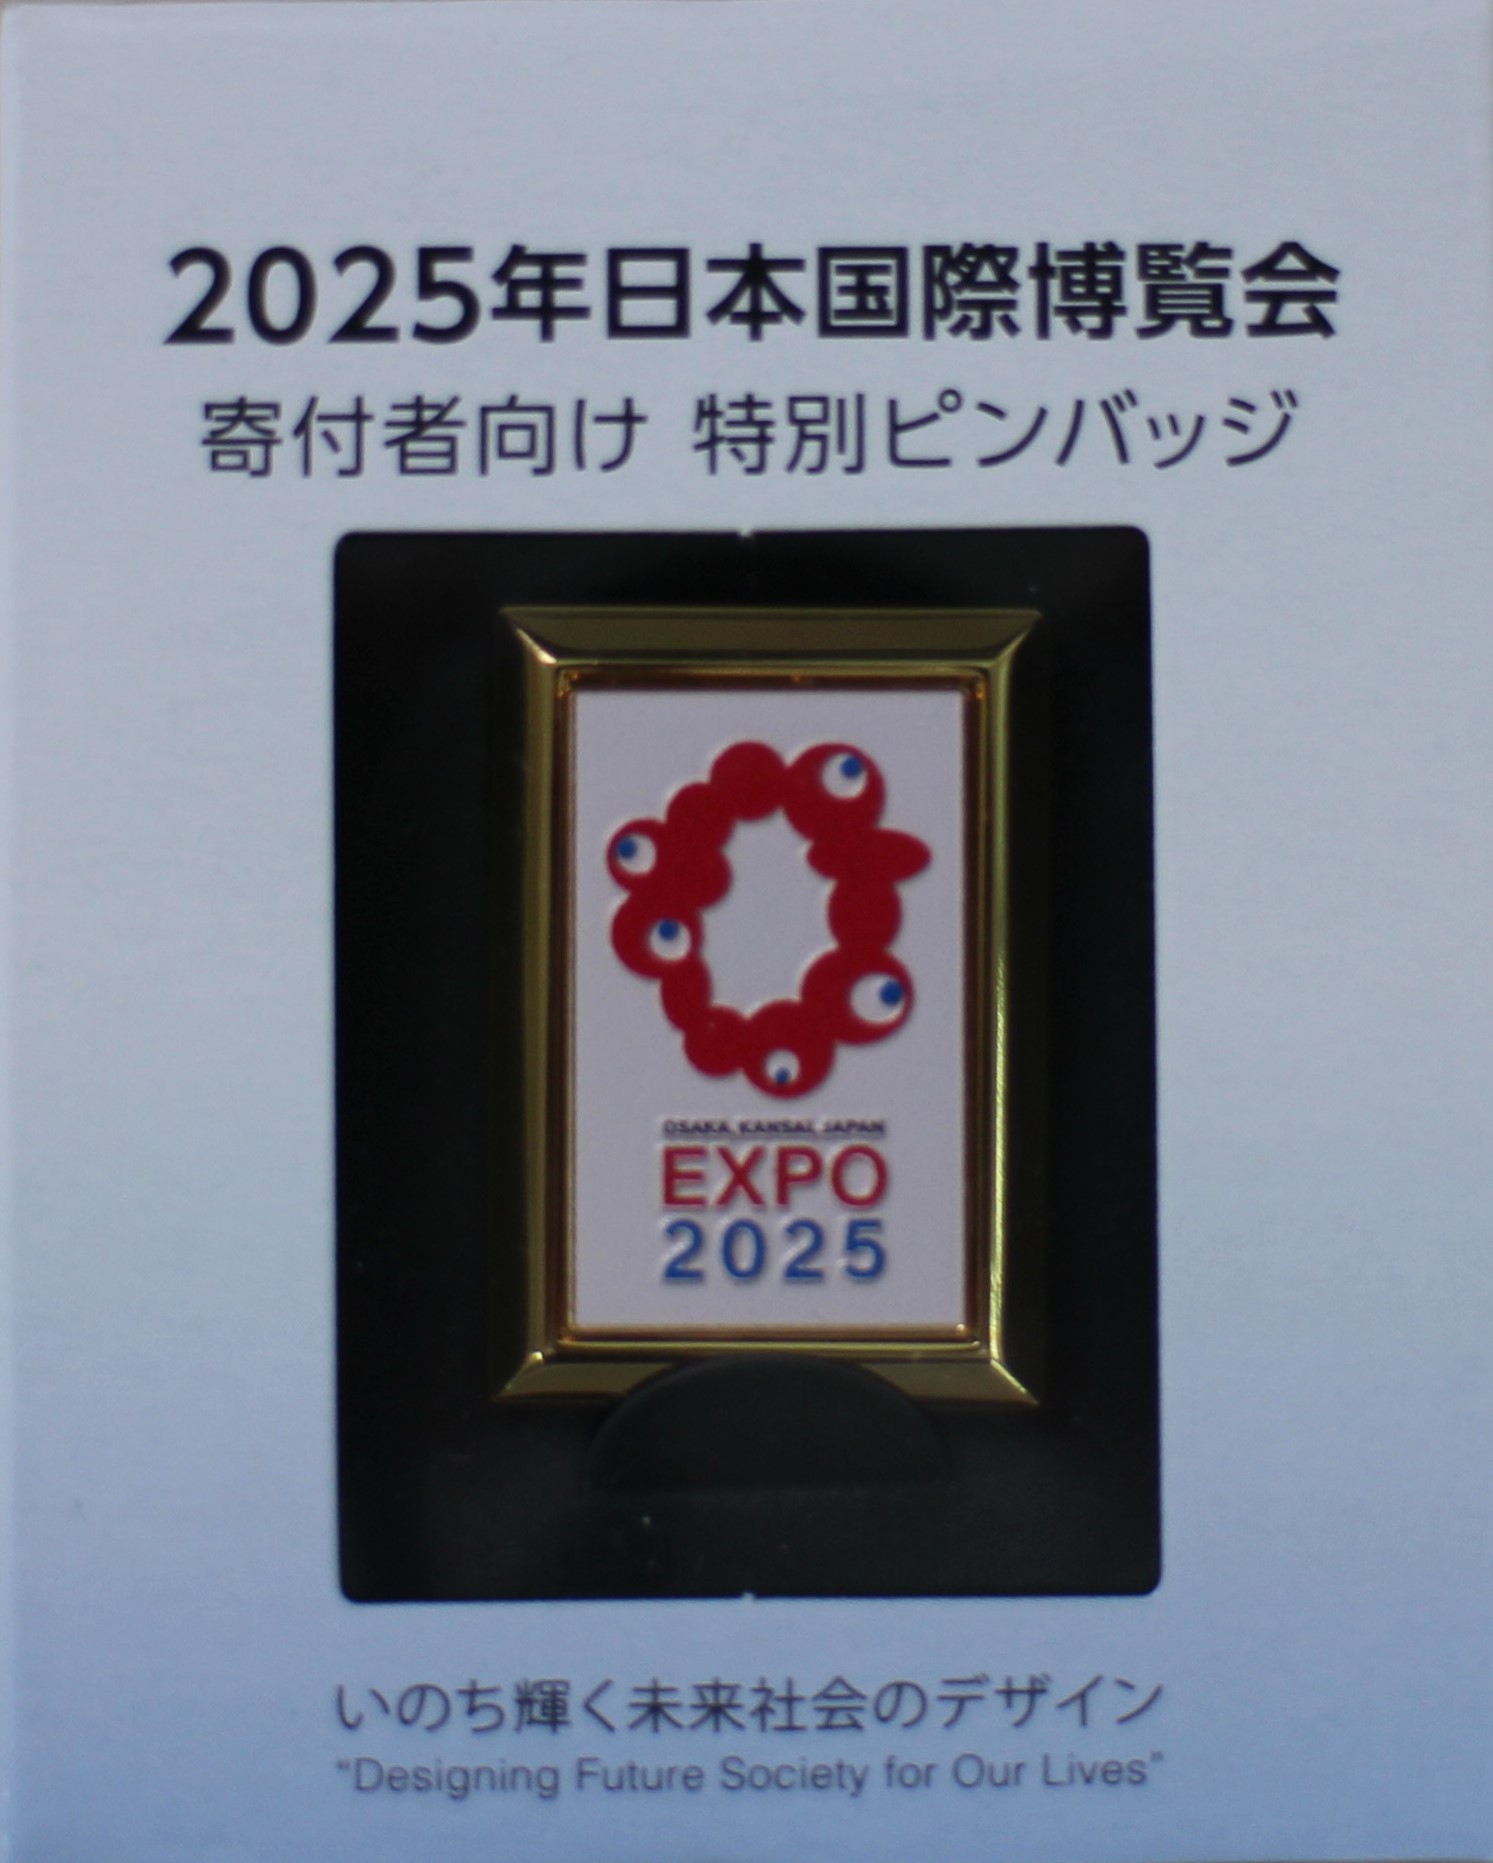 10050円 【メール便送料無料対応可】 2025年日本国際博覧会 寄付者向け 特別ピンバッジ